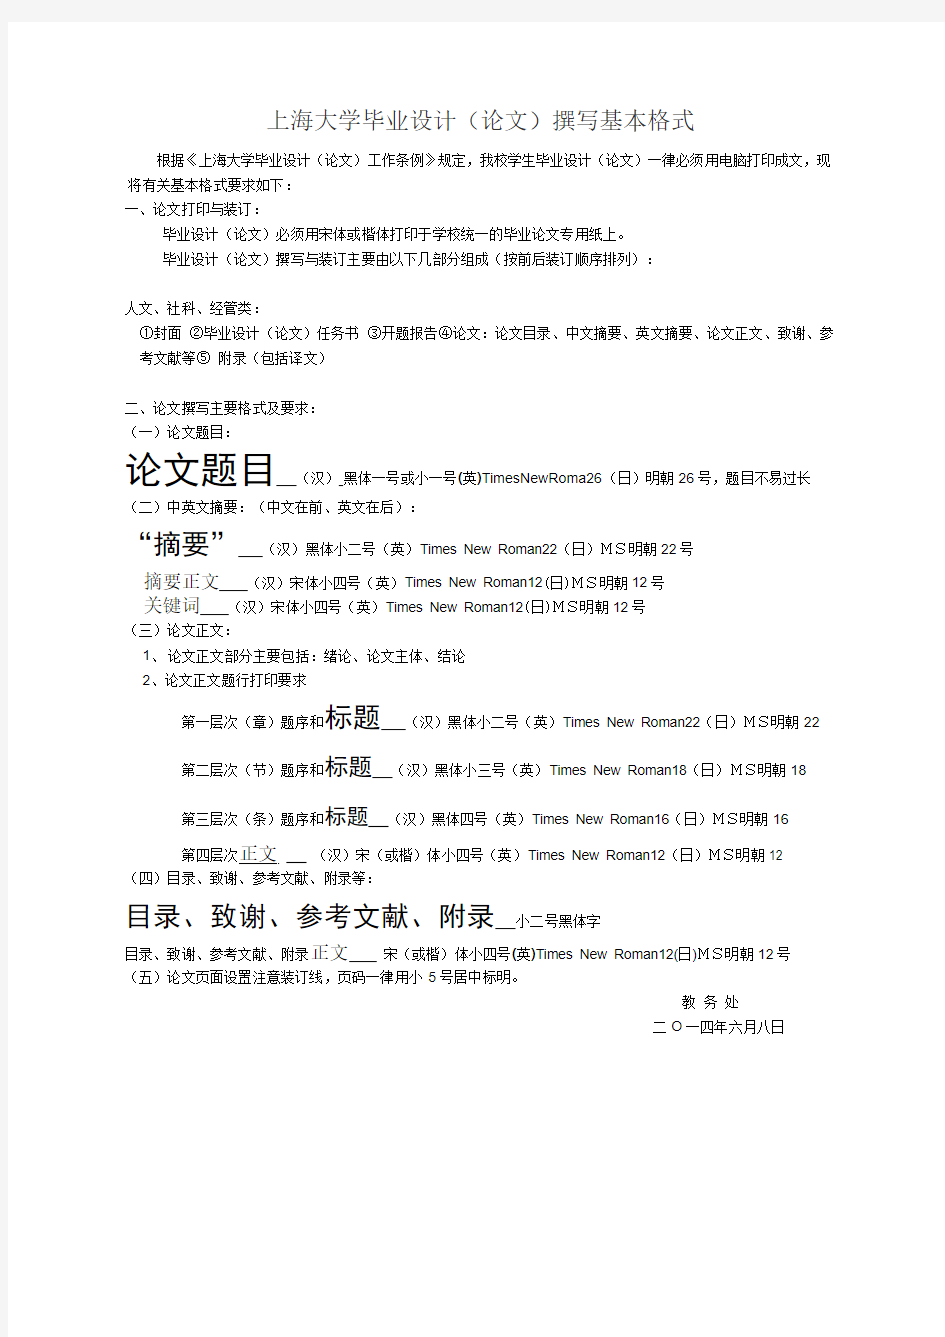 上海大学毕业设计(论文)撰写基本格式